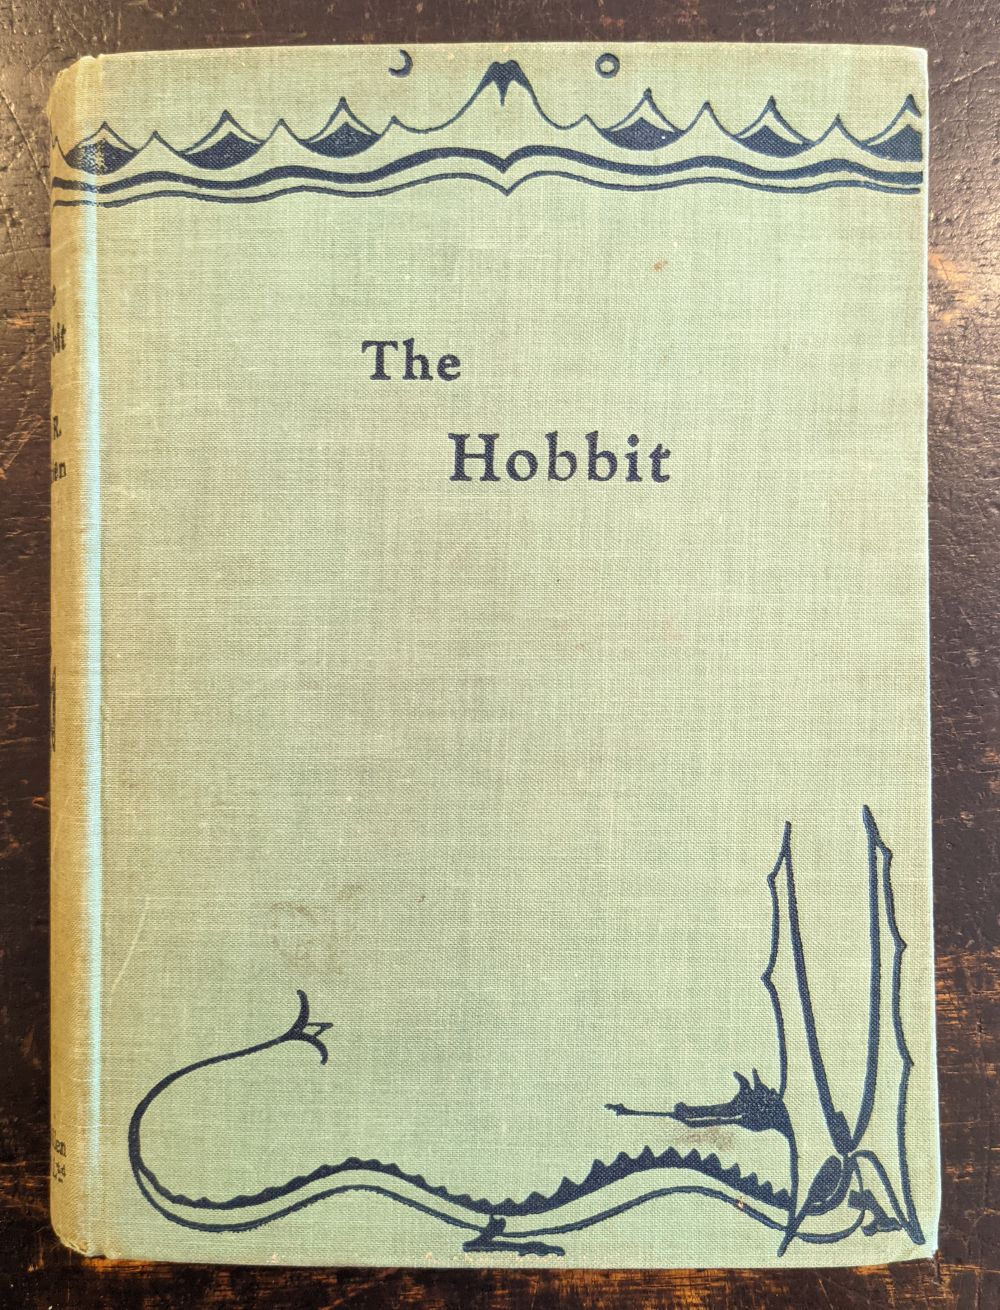 Tolkien (J.R.R.) The Hobbit, 2nd impression, 1937 - Image 2 of 5